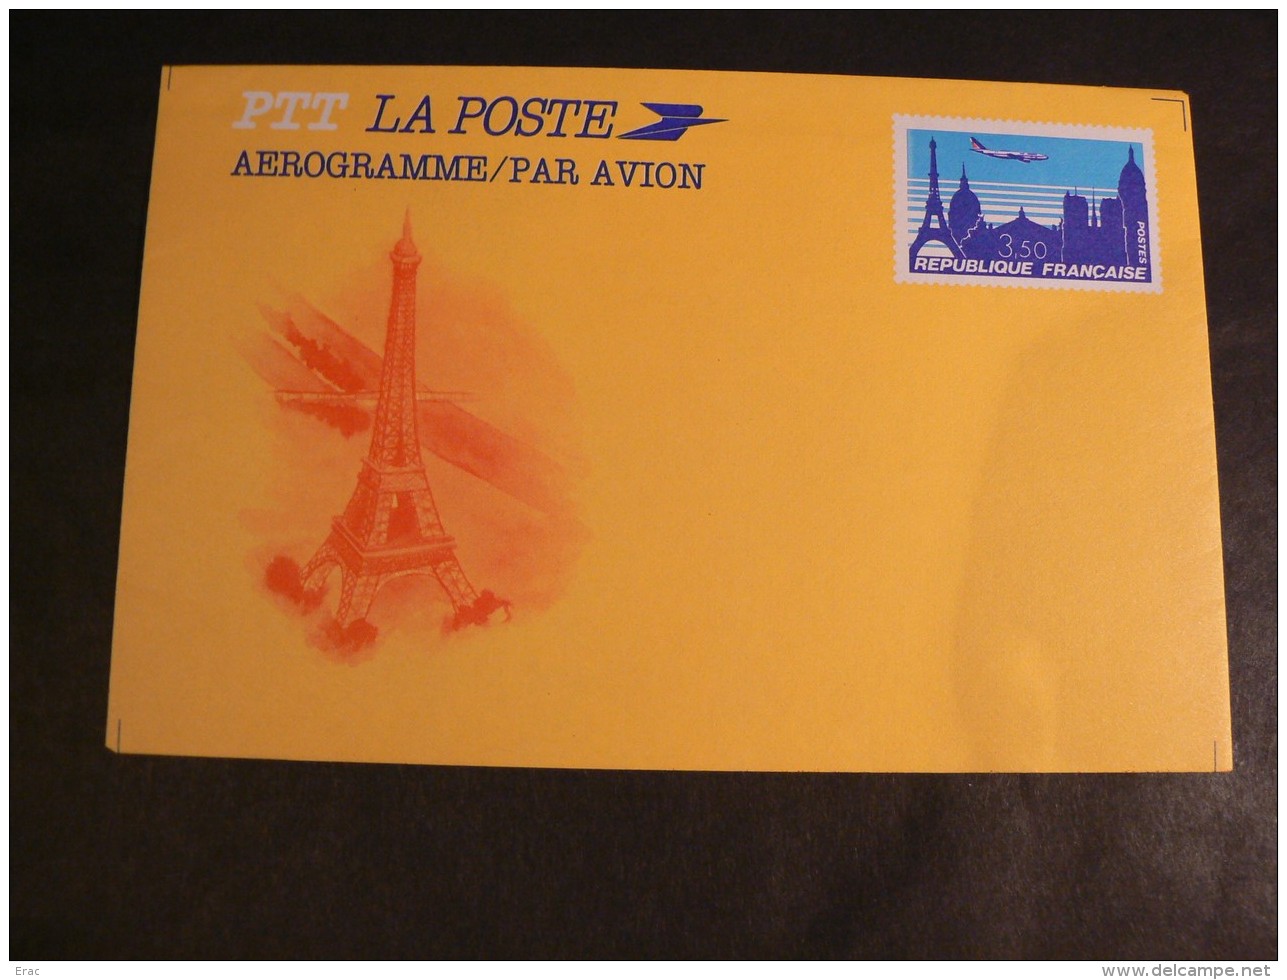 France - Lot d'aérogrammes et enveloppes diverses